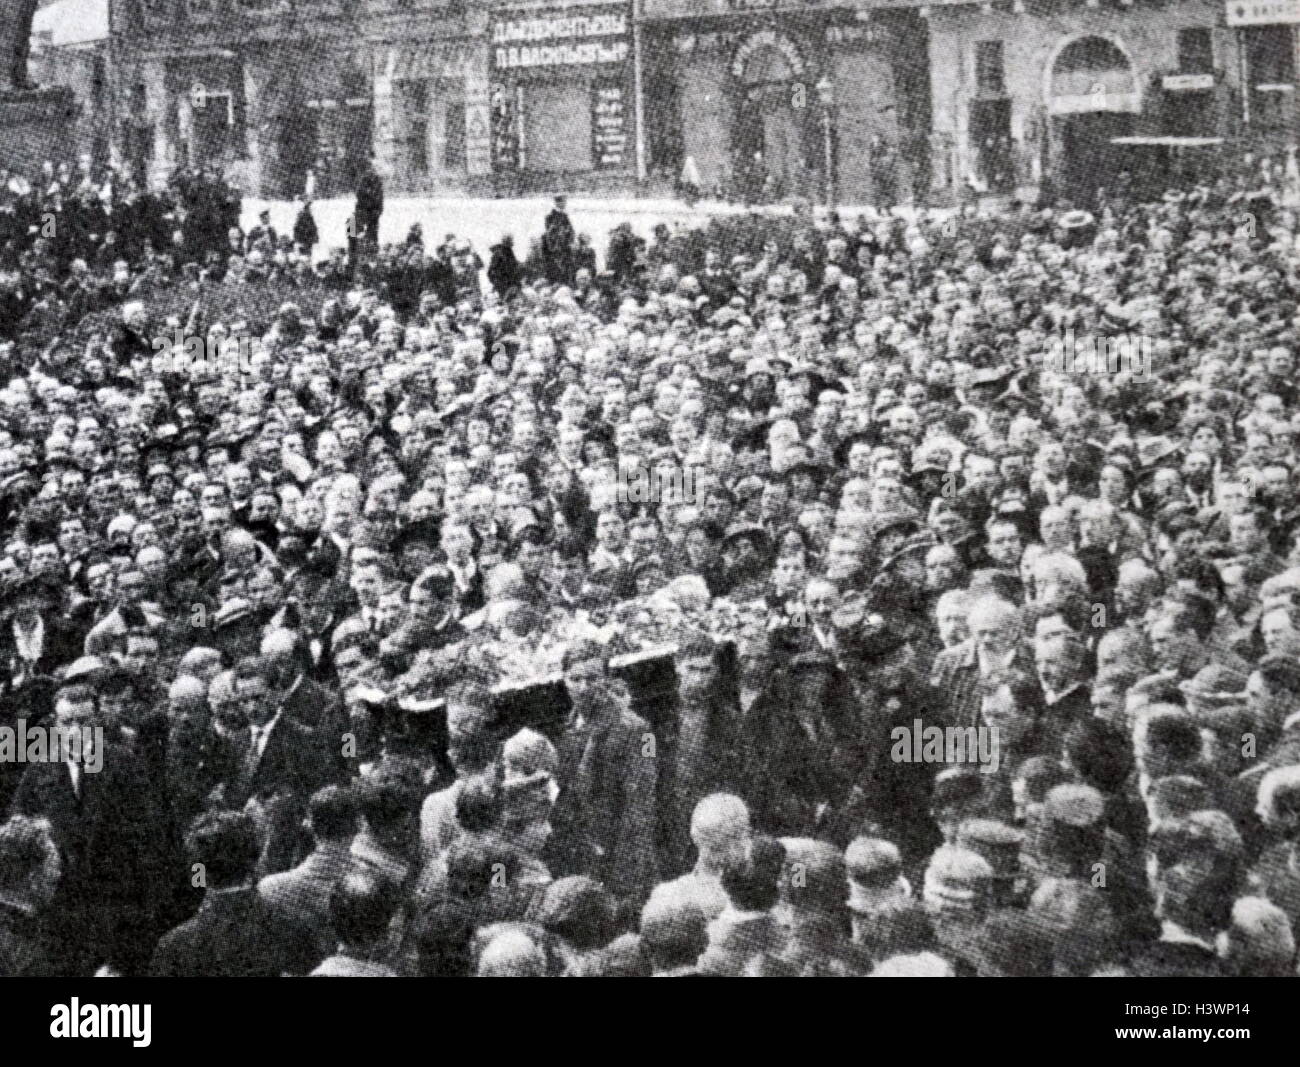 Beerdigung von Georgi Walentinowitsch Plechanow (1856-1918), russischer Revolutionär und marxistische Theoretiker. Er war einer der Gründer der sozialdemokratischen Bewegung in Russland und war einer der ersten Russen selbst als "Marxistische identifizieren." Stockfoto